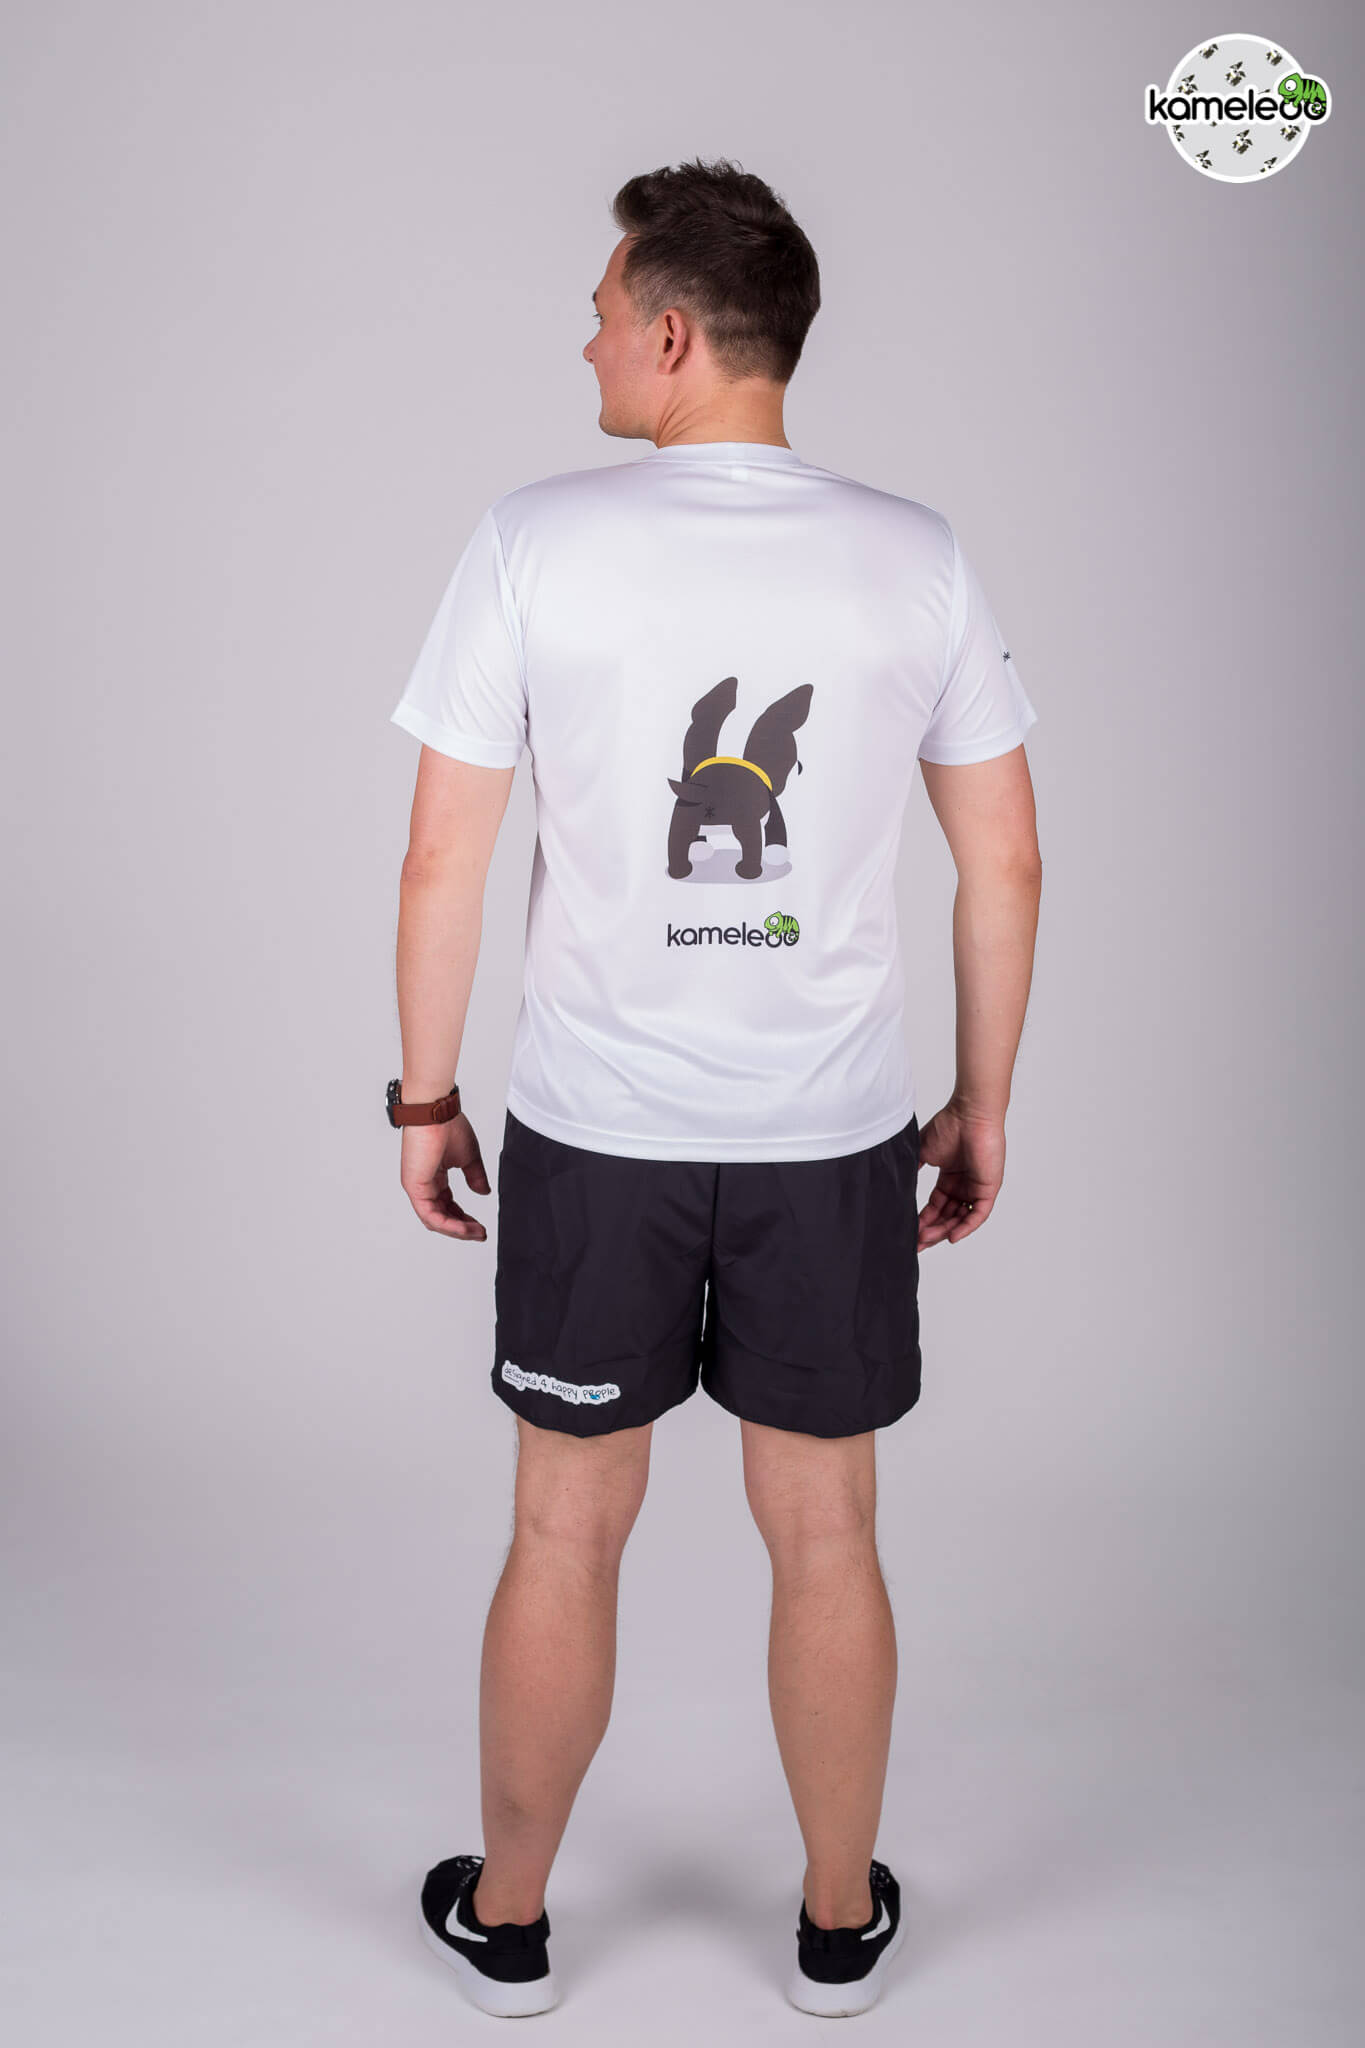 Bostoon Men's T-Shirt - White - Kameleoo.com